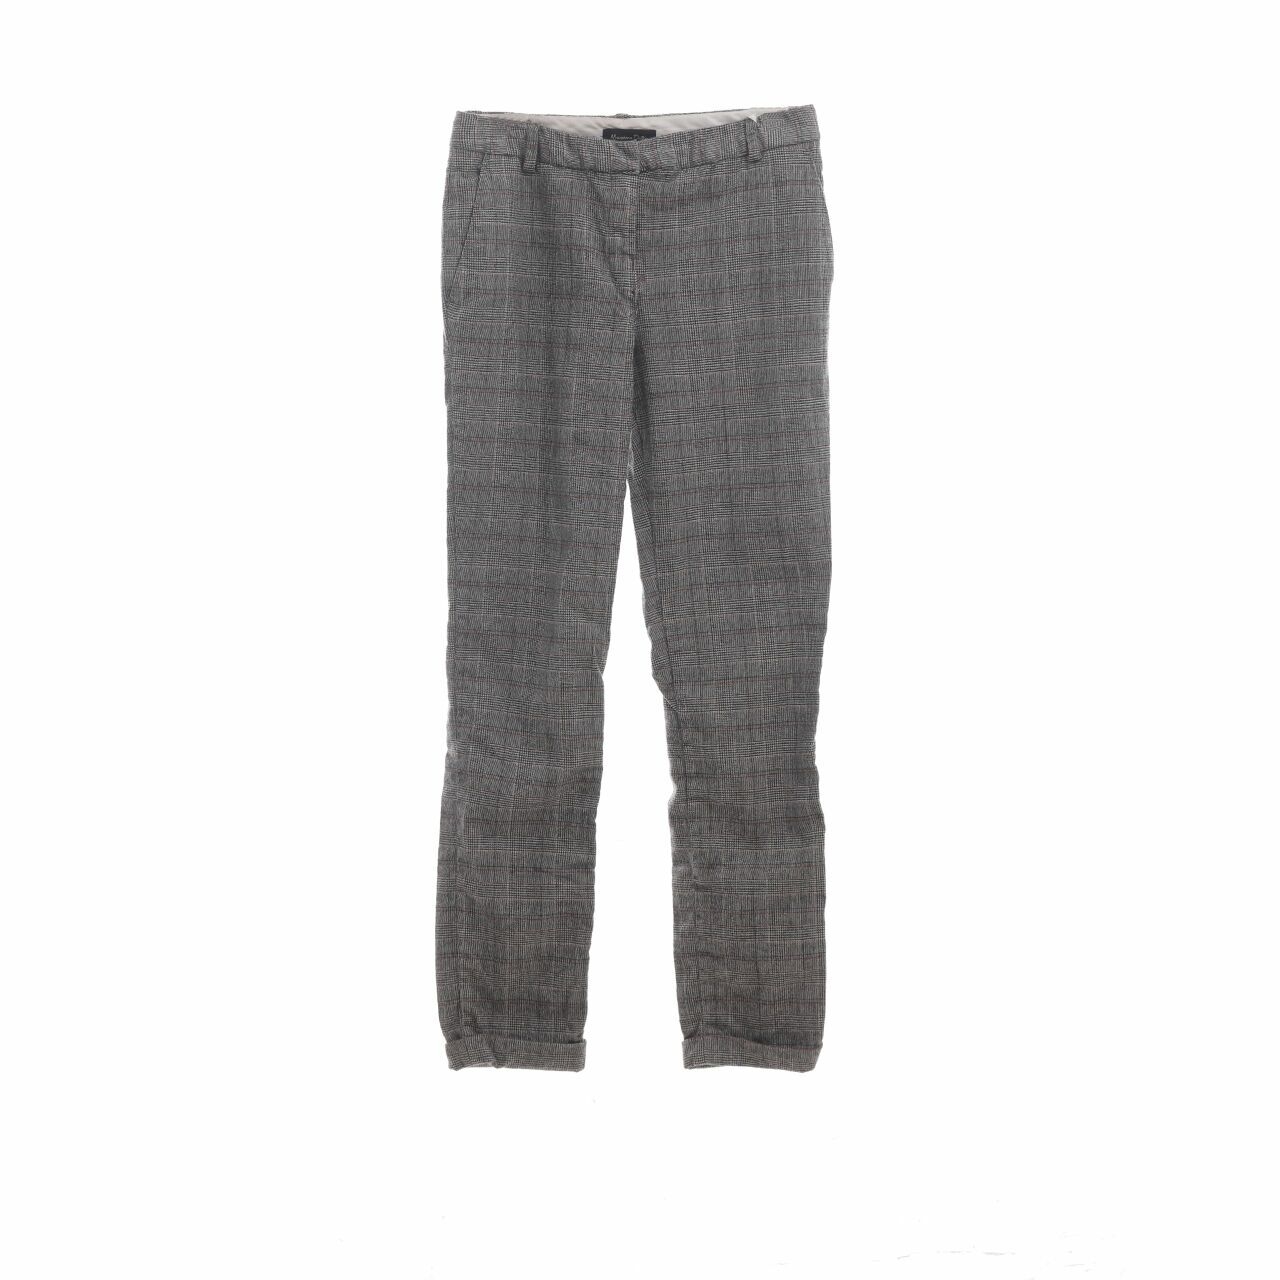 Massimo Dutti Grey Long Pants